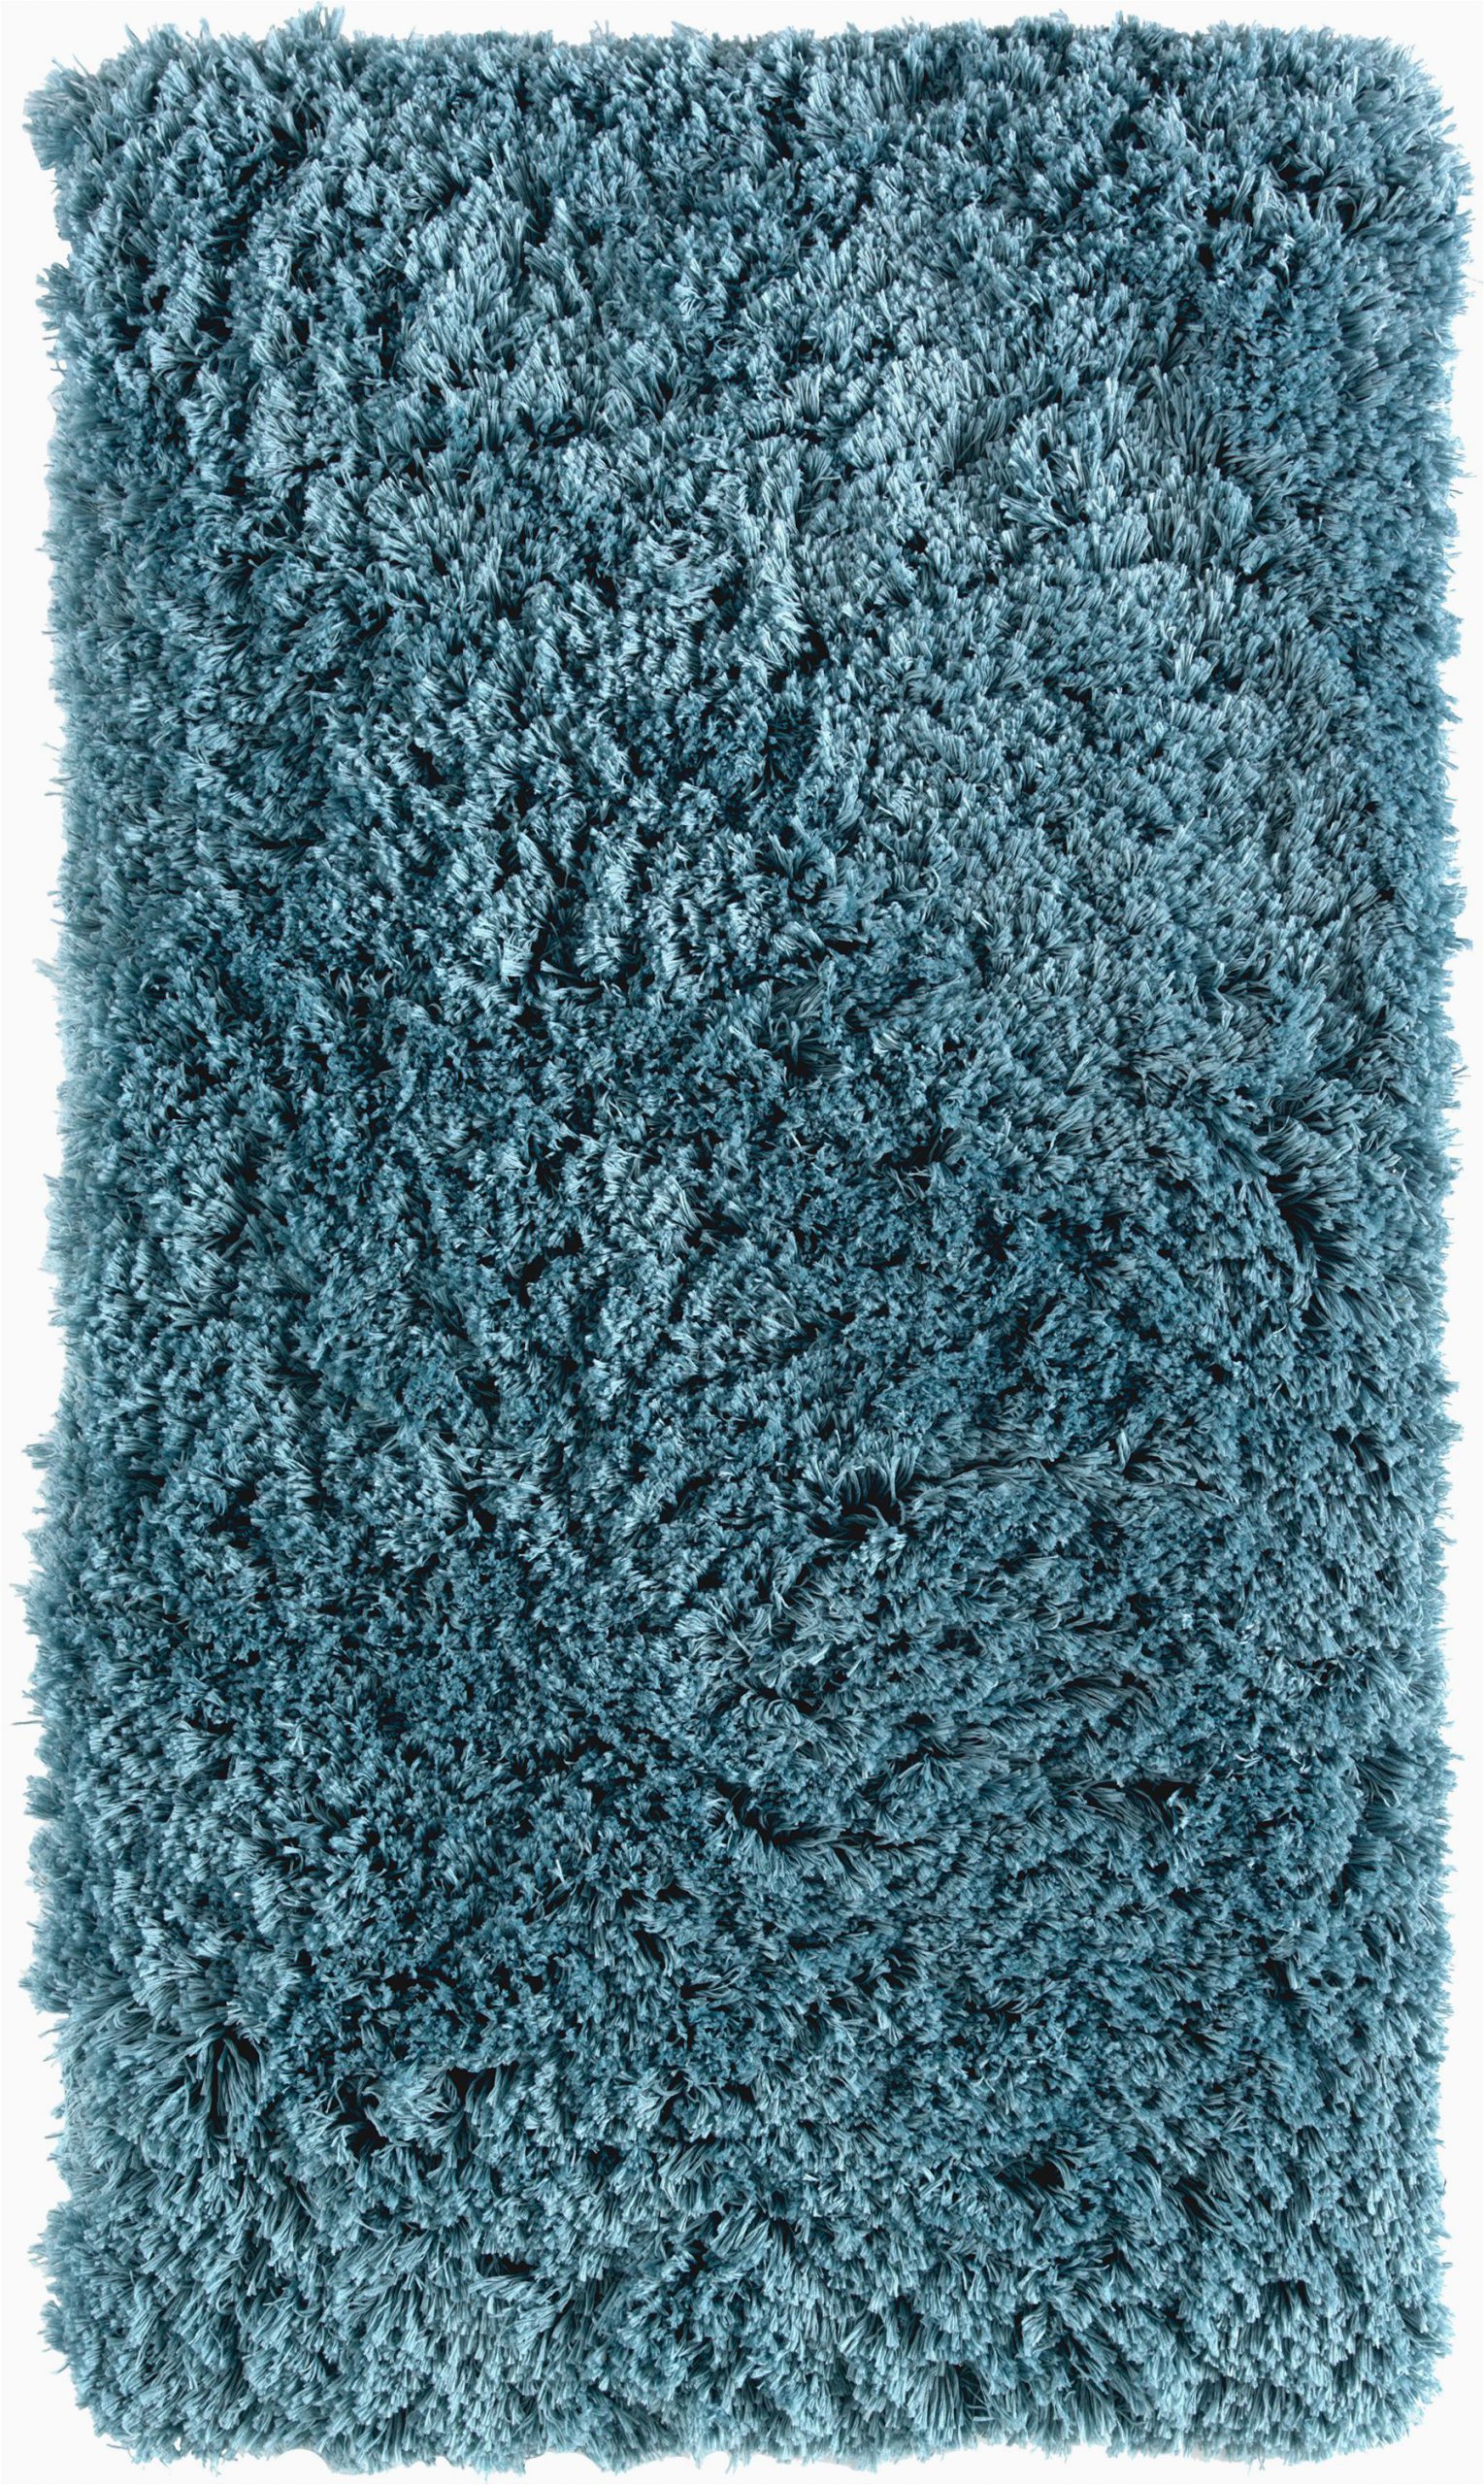 Aqua Blue Bathroom Rugs Hotel Style Ultra Plush & soft Memory Foam Bath Rug Teal 22" X 40" Walmart